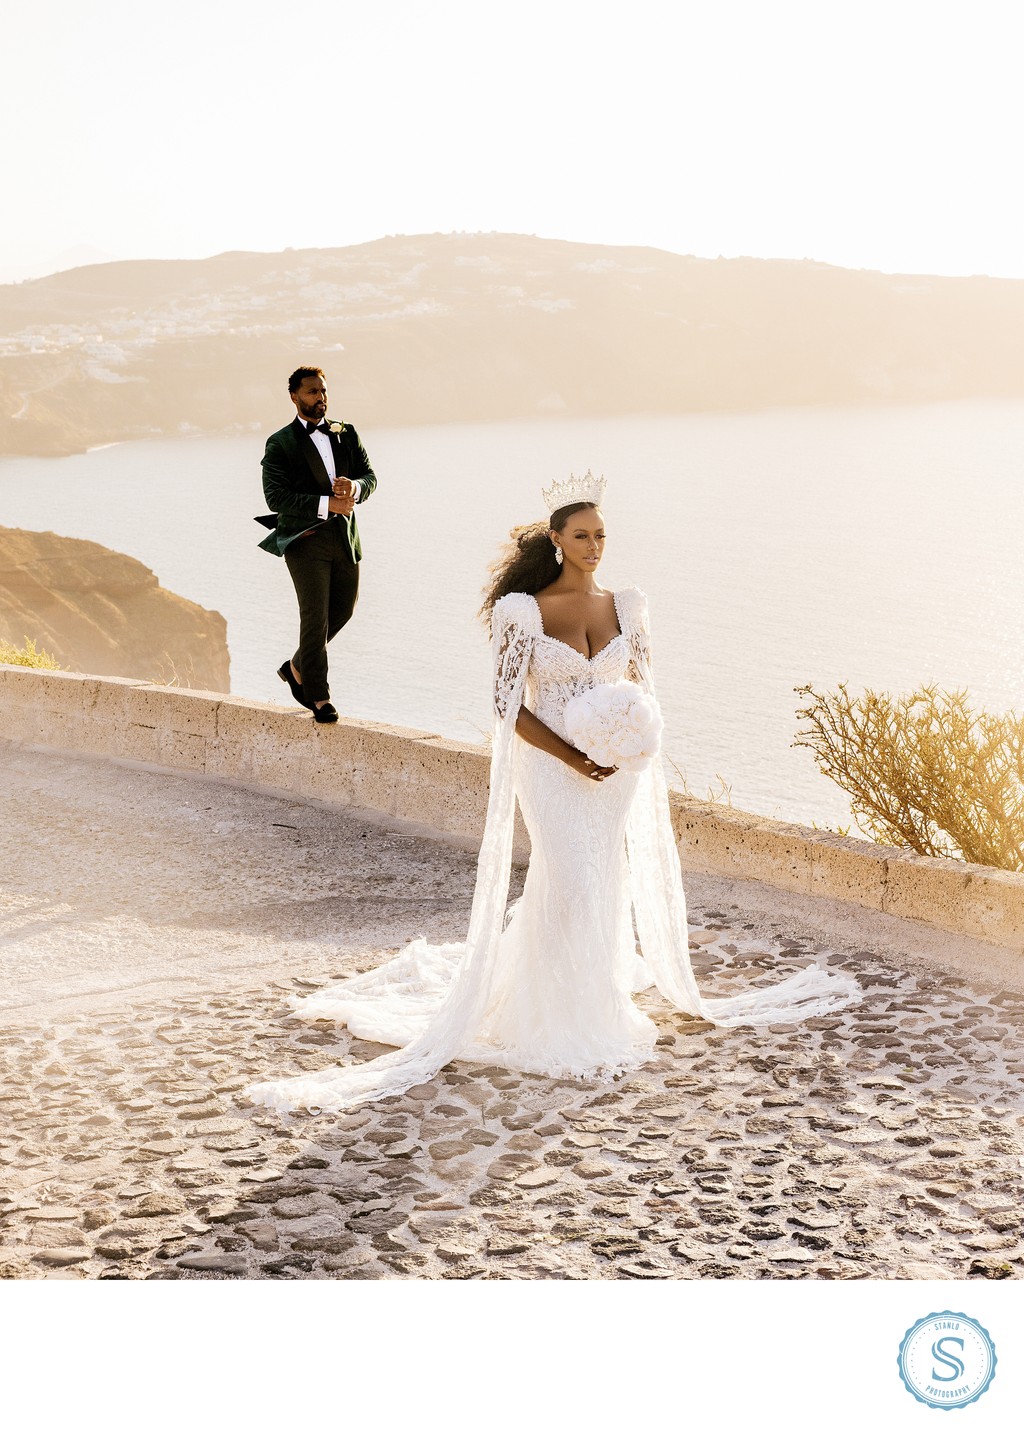 Santorini Weddings Photographer